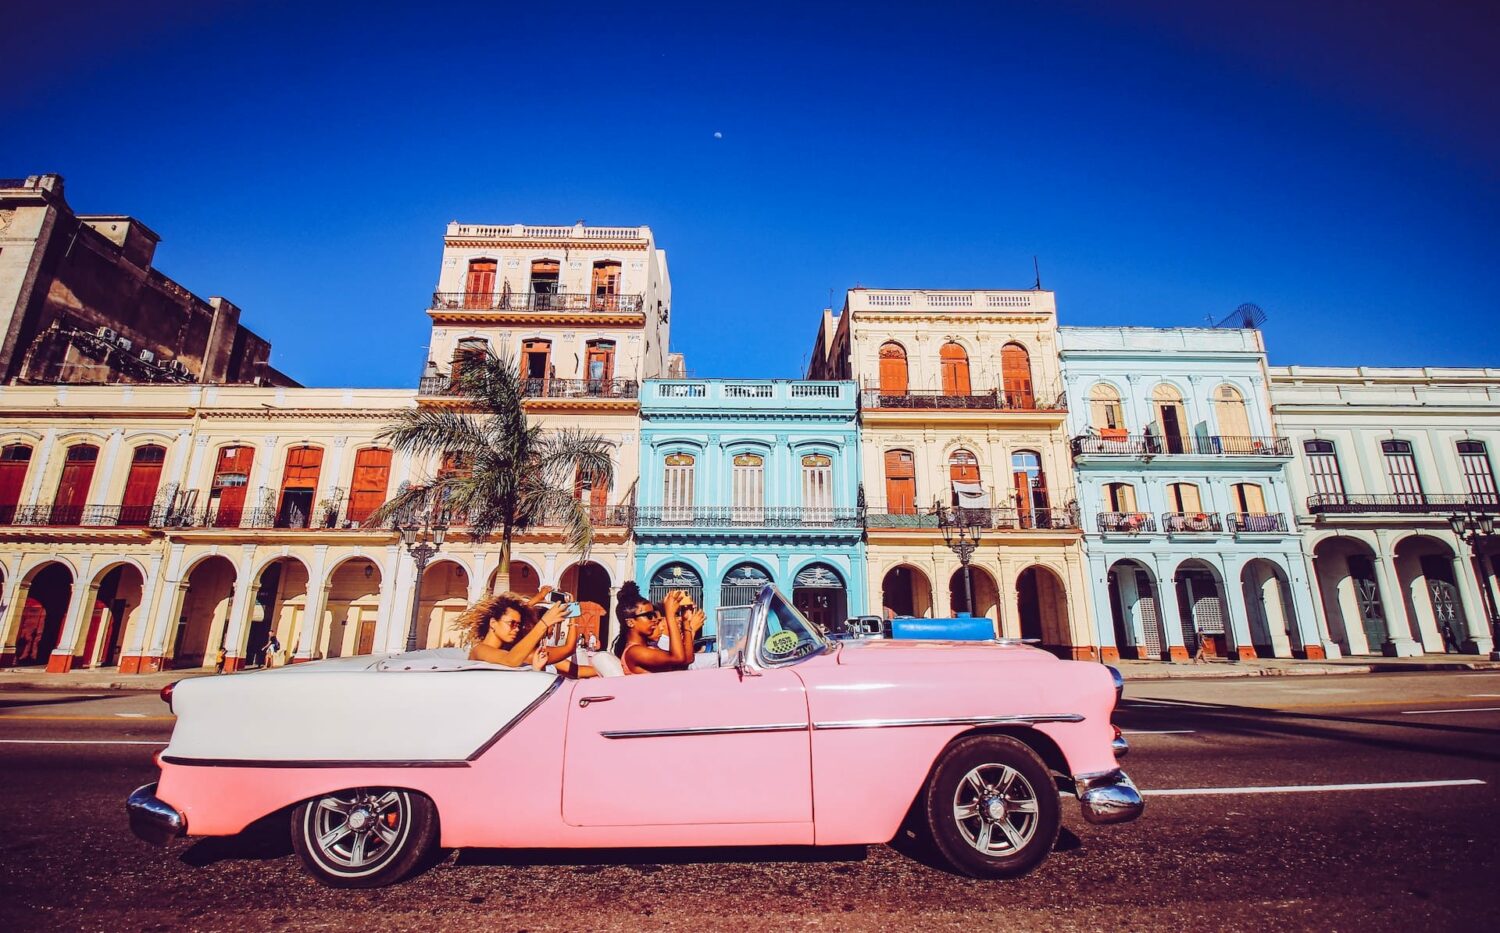 Mulheres andando em um carro antigo conversível rosa, tirando fotos com o celular na mão de uma região de Havana, na Cuba, que tem prédios antigos laranja e azul, com várias janelas, em um dia de céu azul